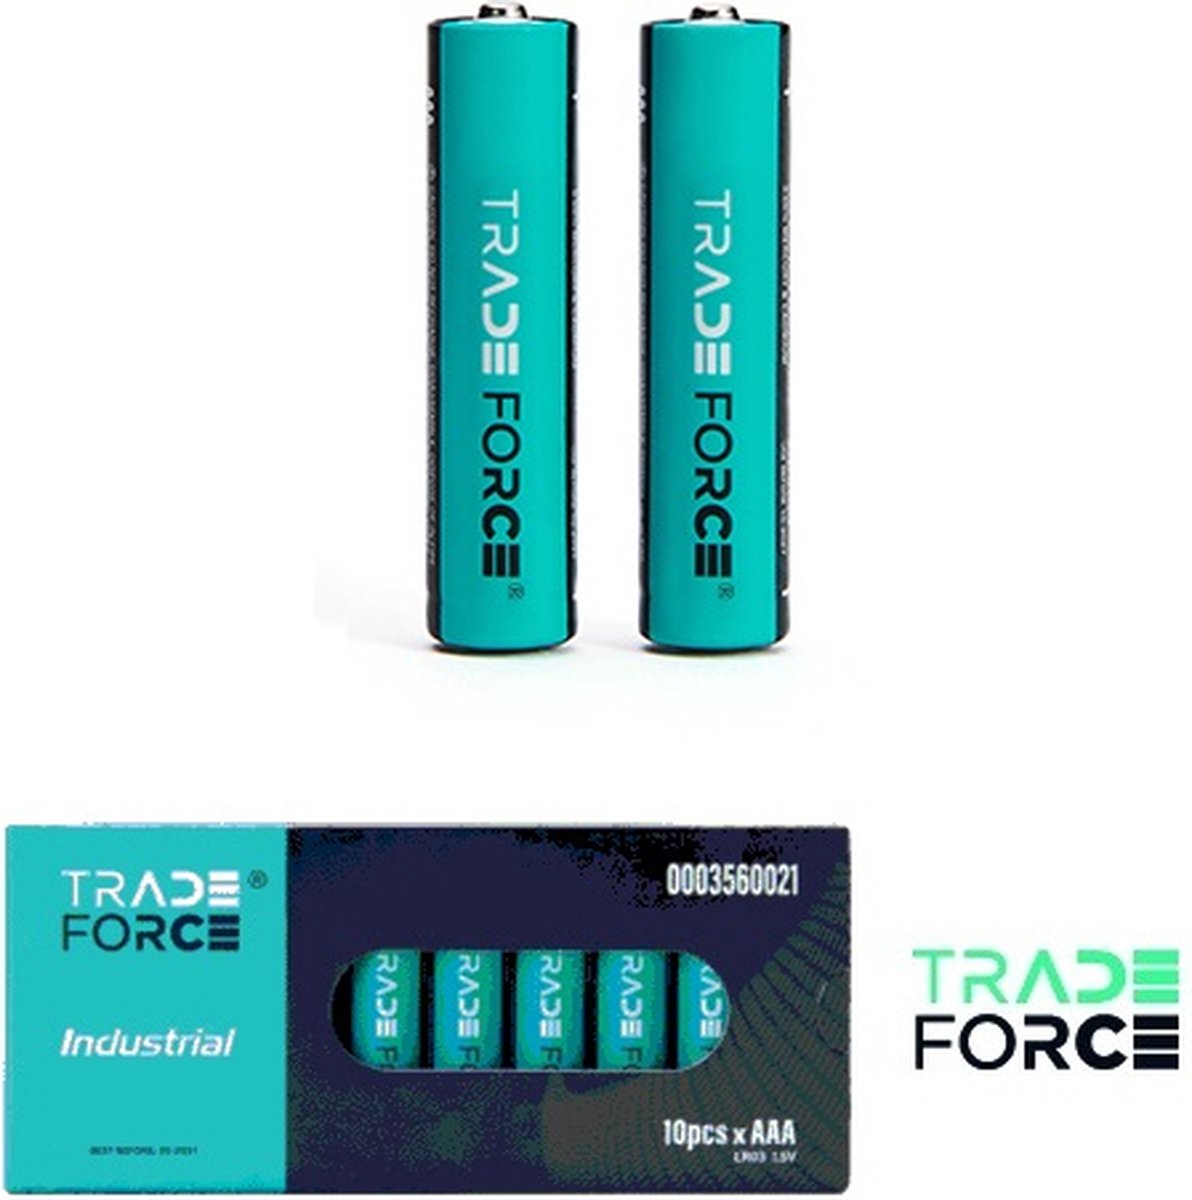 10 pack - Trade Force - AAA batterij - 1,5V - 1270mAh - Niet oplaadbaar